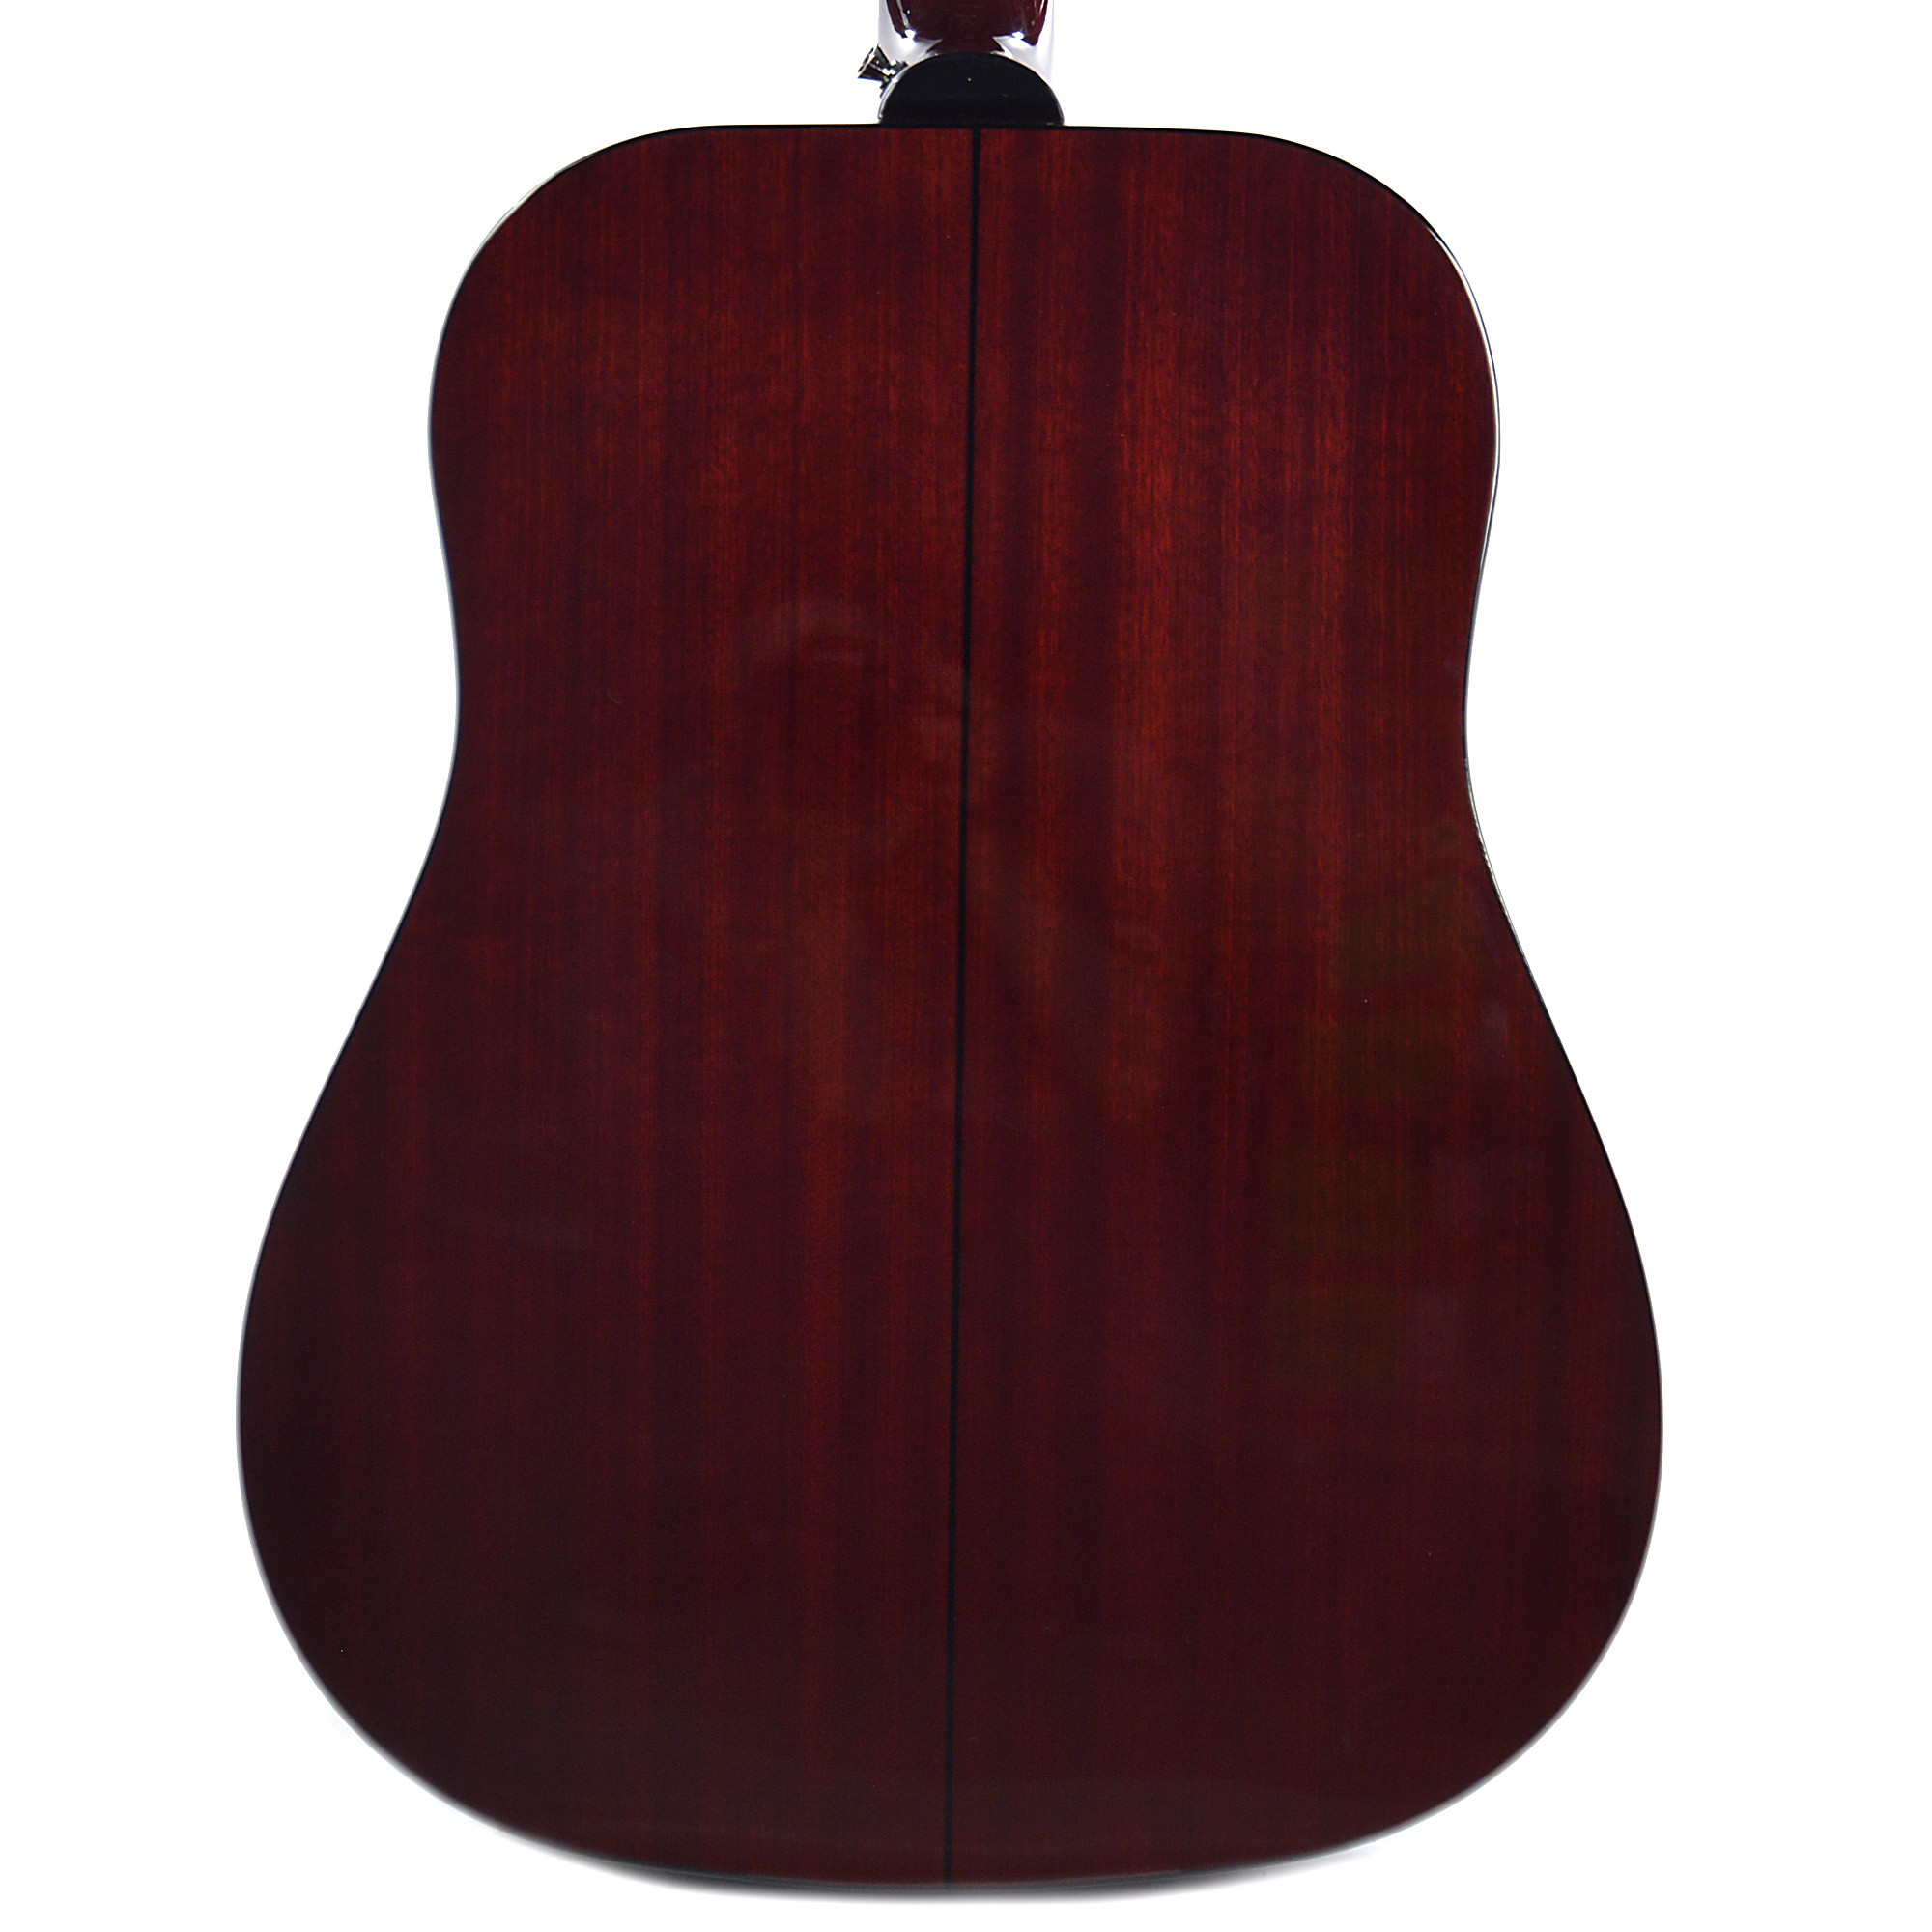 Epiphone Pro-1 Acoustic Dreadnought Epicea Acajou 2016 - Wine Red - Guitare Acoustique - Variation 4